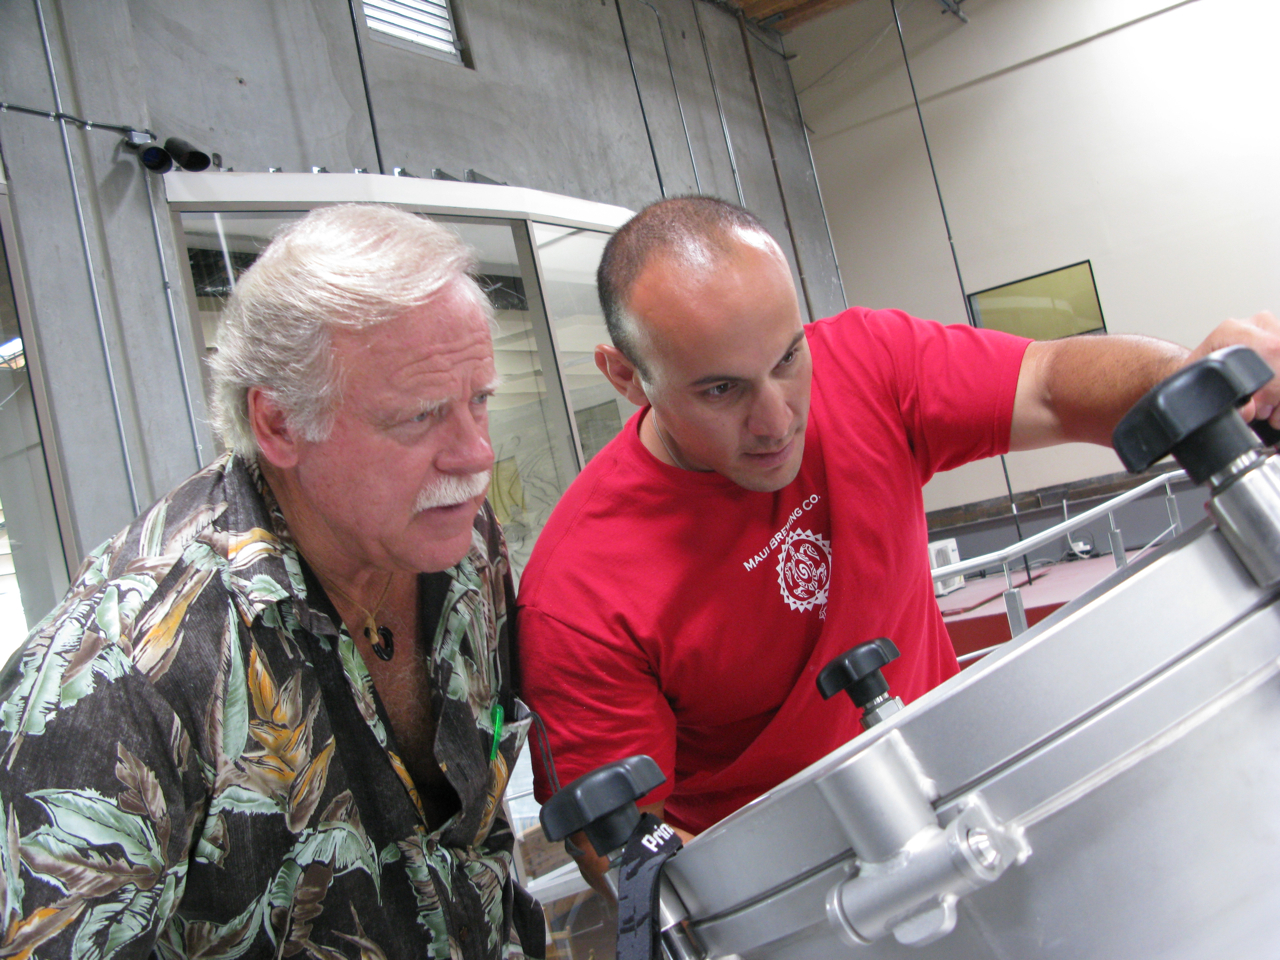 Ken Schmidt and Garrett Marrero monitoring the brew